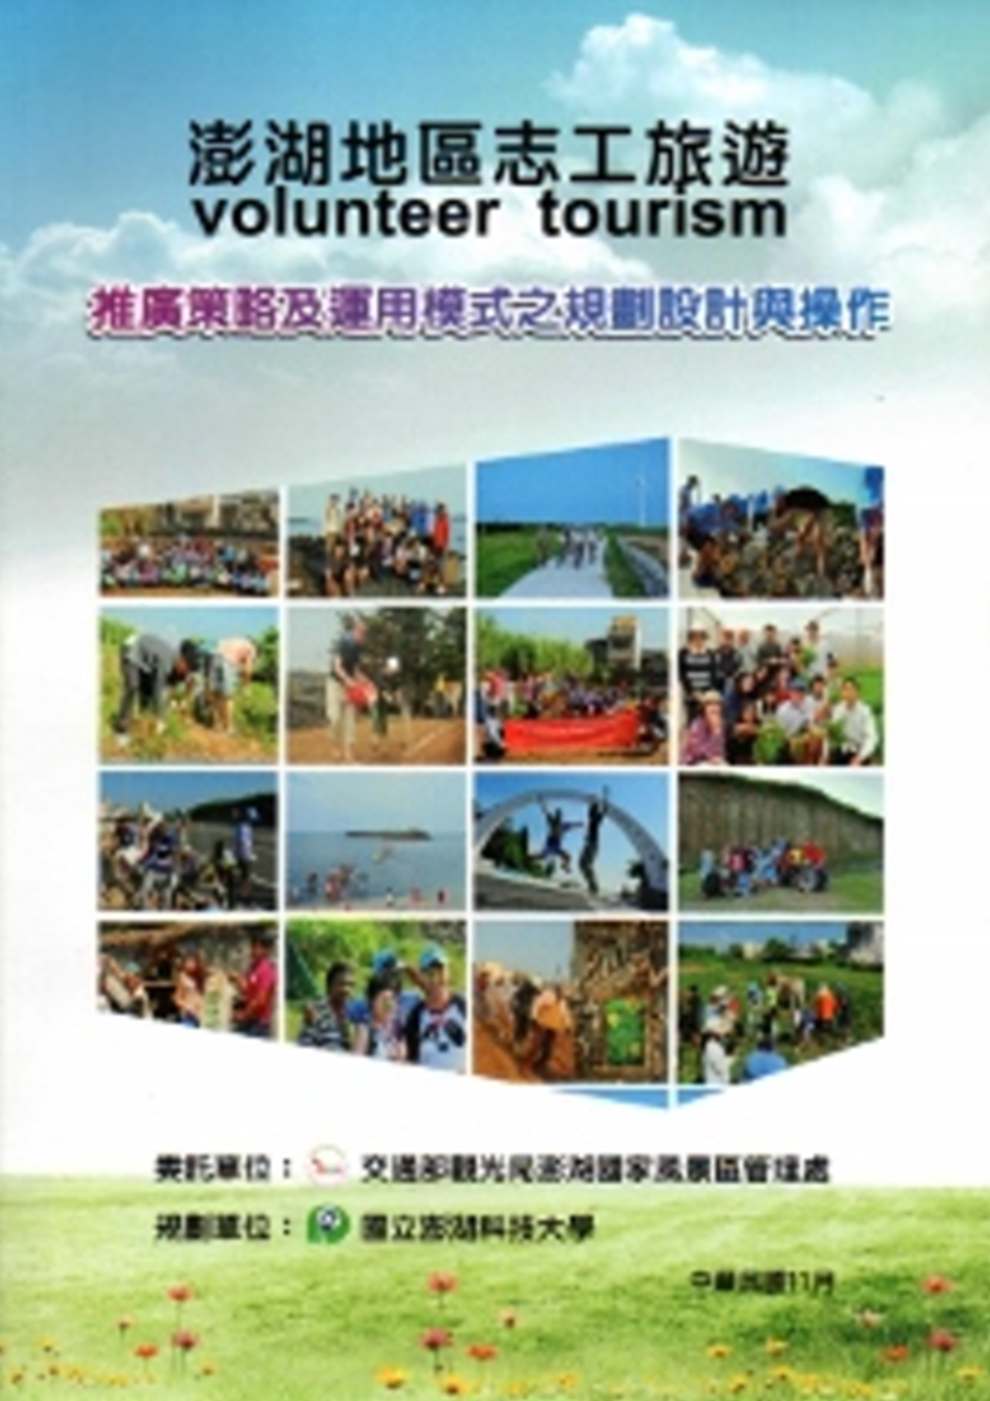 澎湖地區志工旅遊(volunteer tourism)推廣策略及運用模式之規劃設計與操作規劃報告書